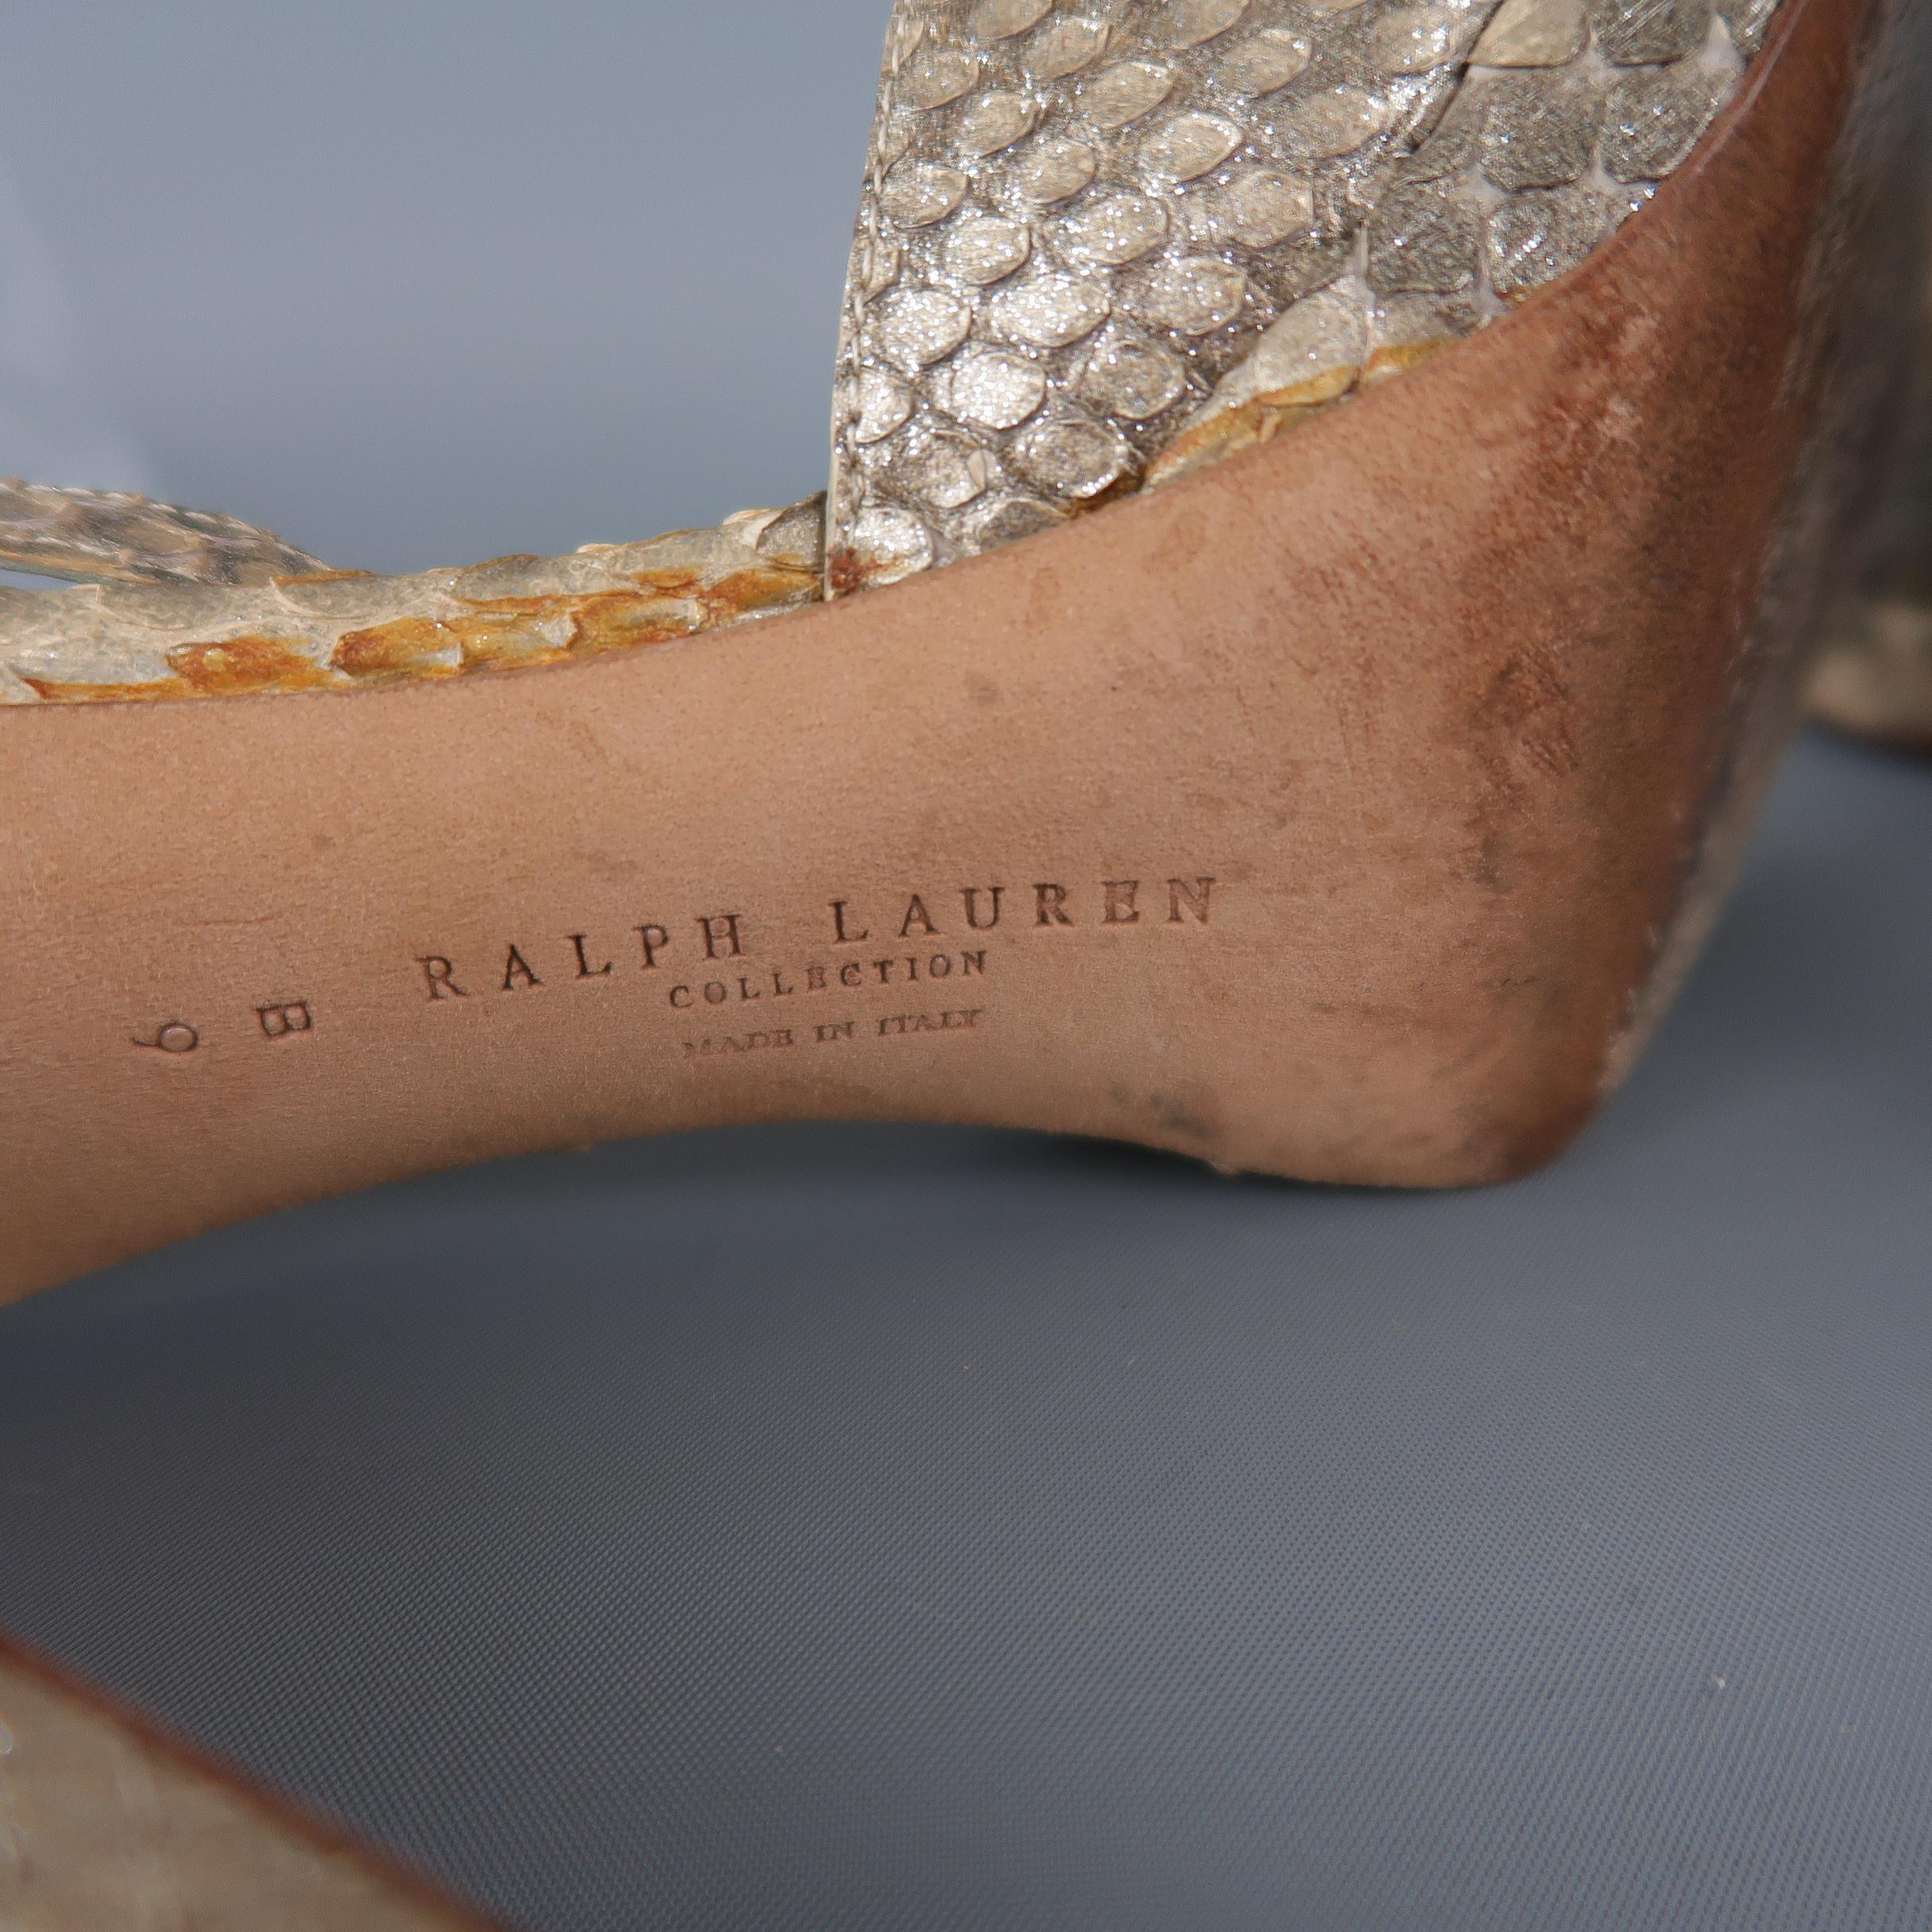 RALPH LAUREN COLLECTION Size 9 Gold Glitter Phyton Skin Platform Sandals 1